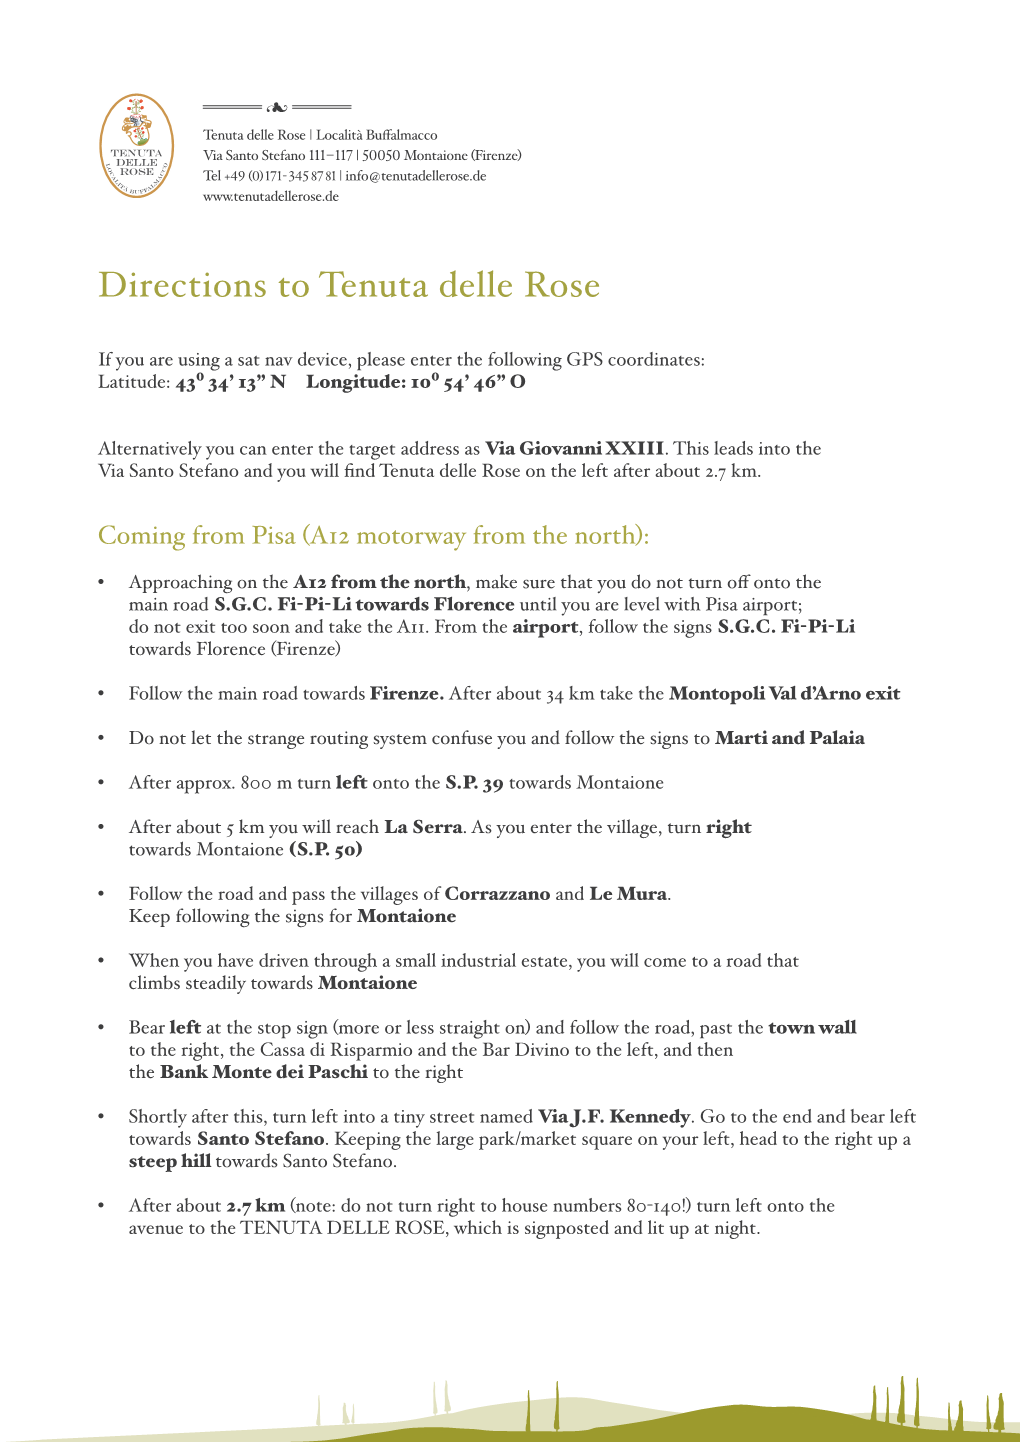 Directions to Tenuta Delle Rose